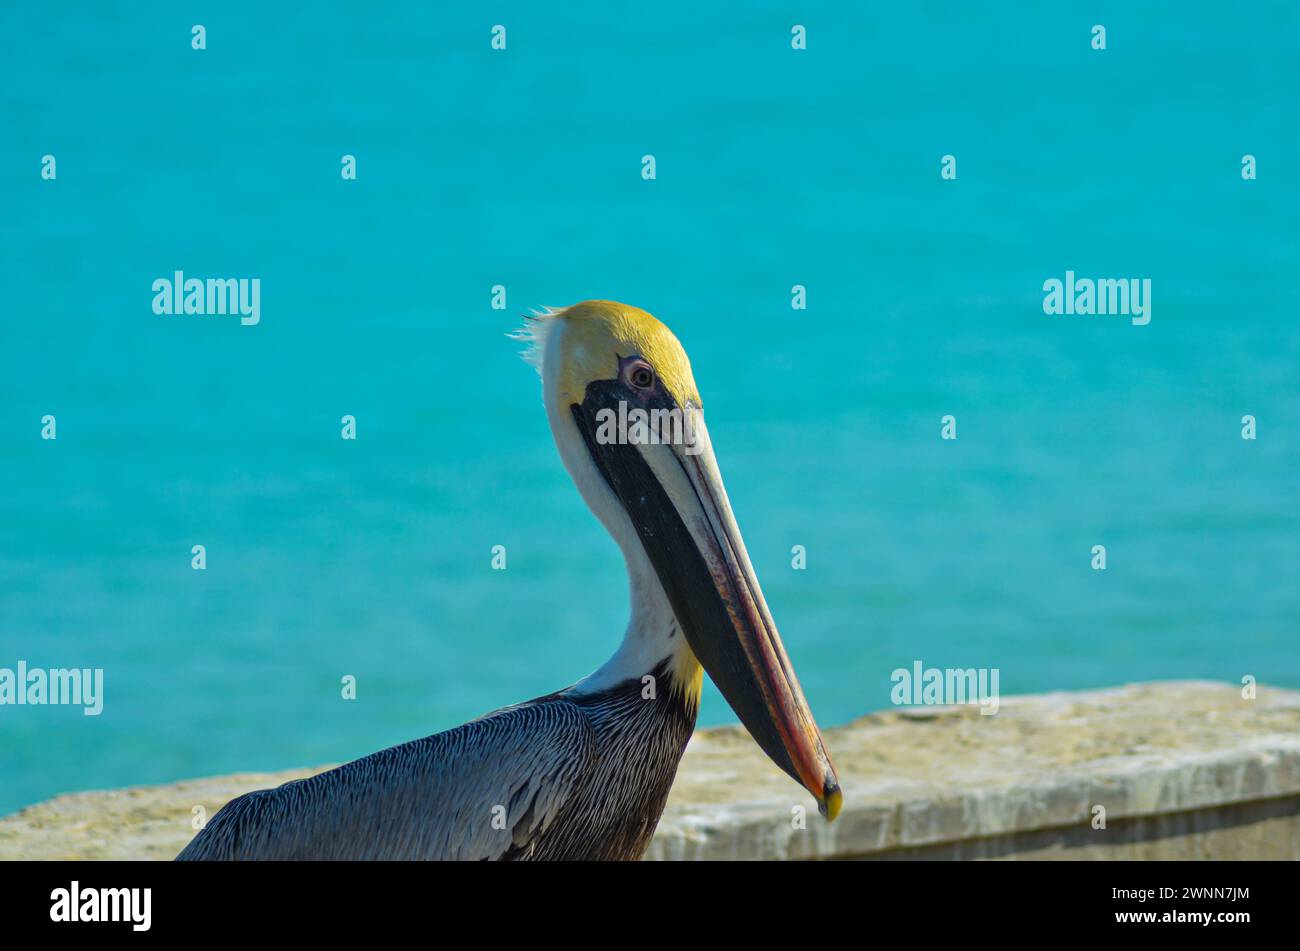 Ein brauner Pelikan mit weißem und gelbem Kopf, ein langer Schnabel mit gelbem Haken. Blauer unscharfer Hintergrund. Hochformat. Stockfoto